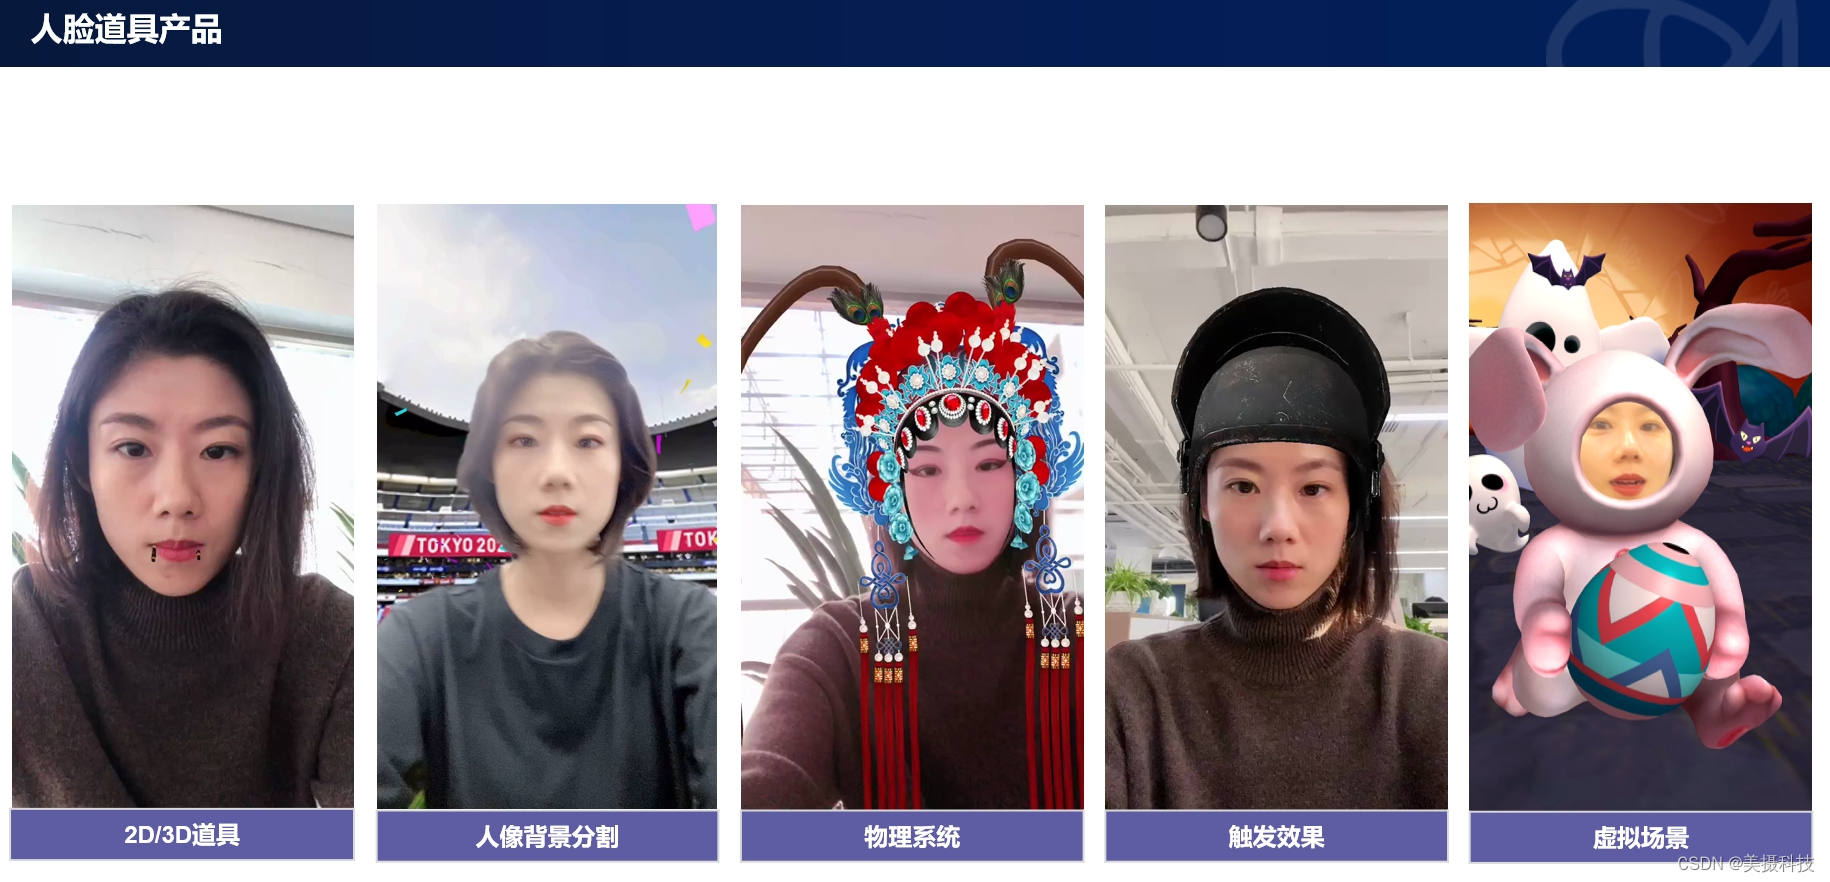 AR人脸道具SDK解决方案，实现道具与人脸的自然融合